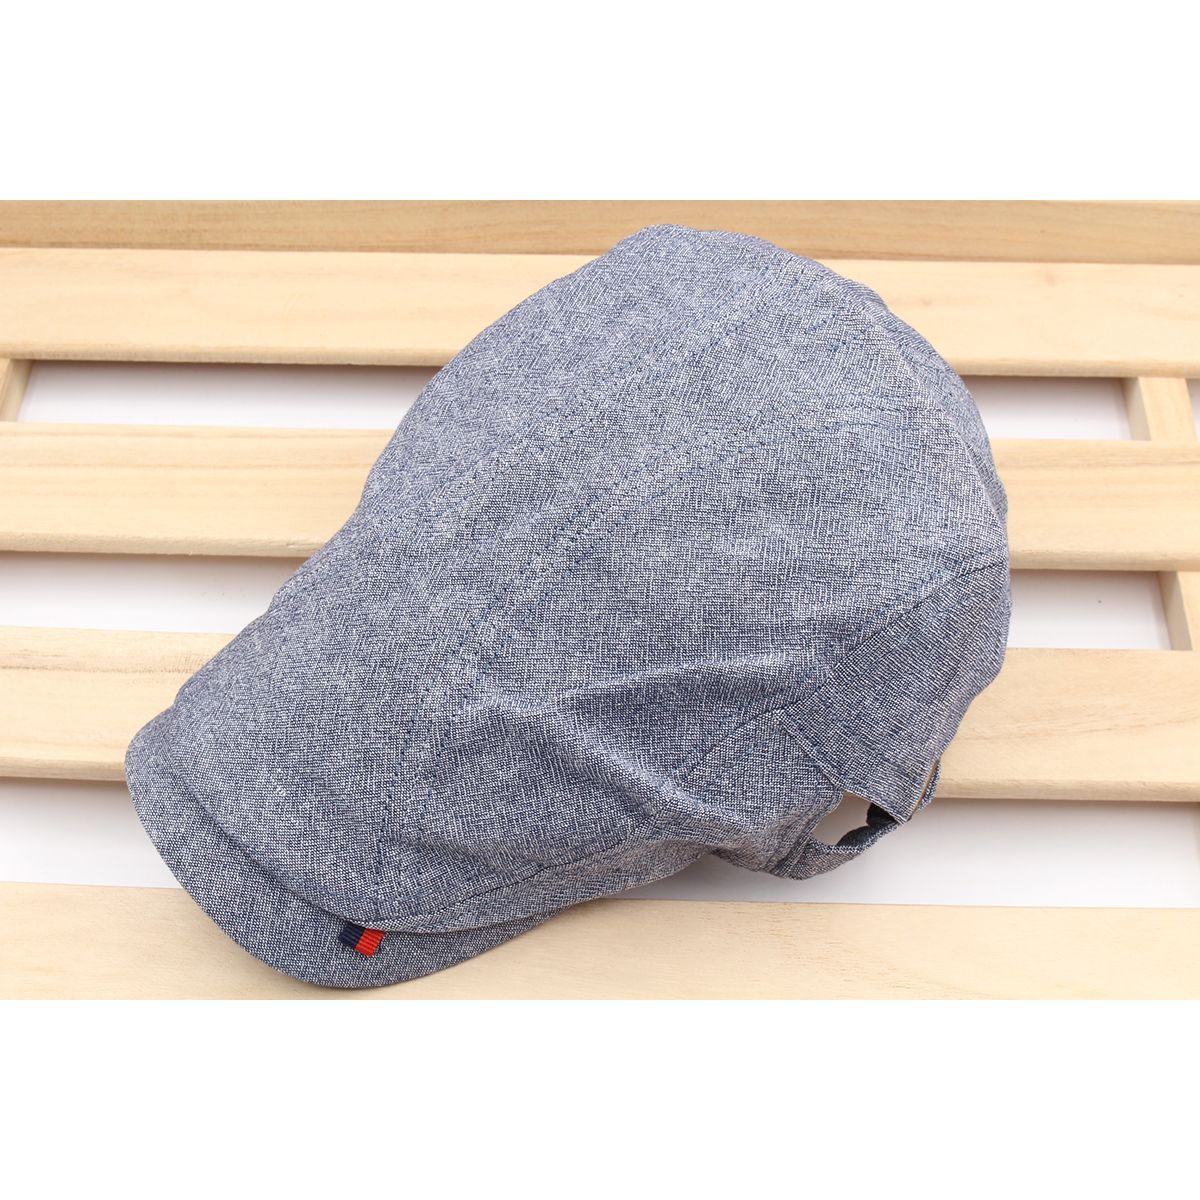 ンチング帽子 ツバ長 デザイン性あり 杢柄 綿 帽子 キャスケットキャップ メンズ レディース 56cm~59cm HC121-3